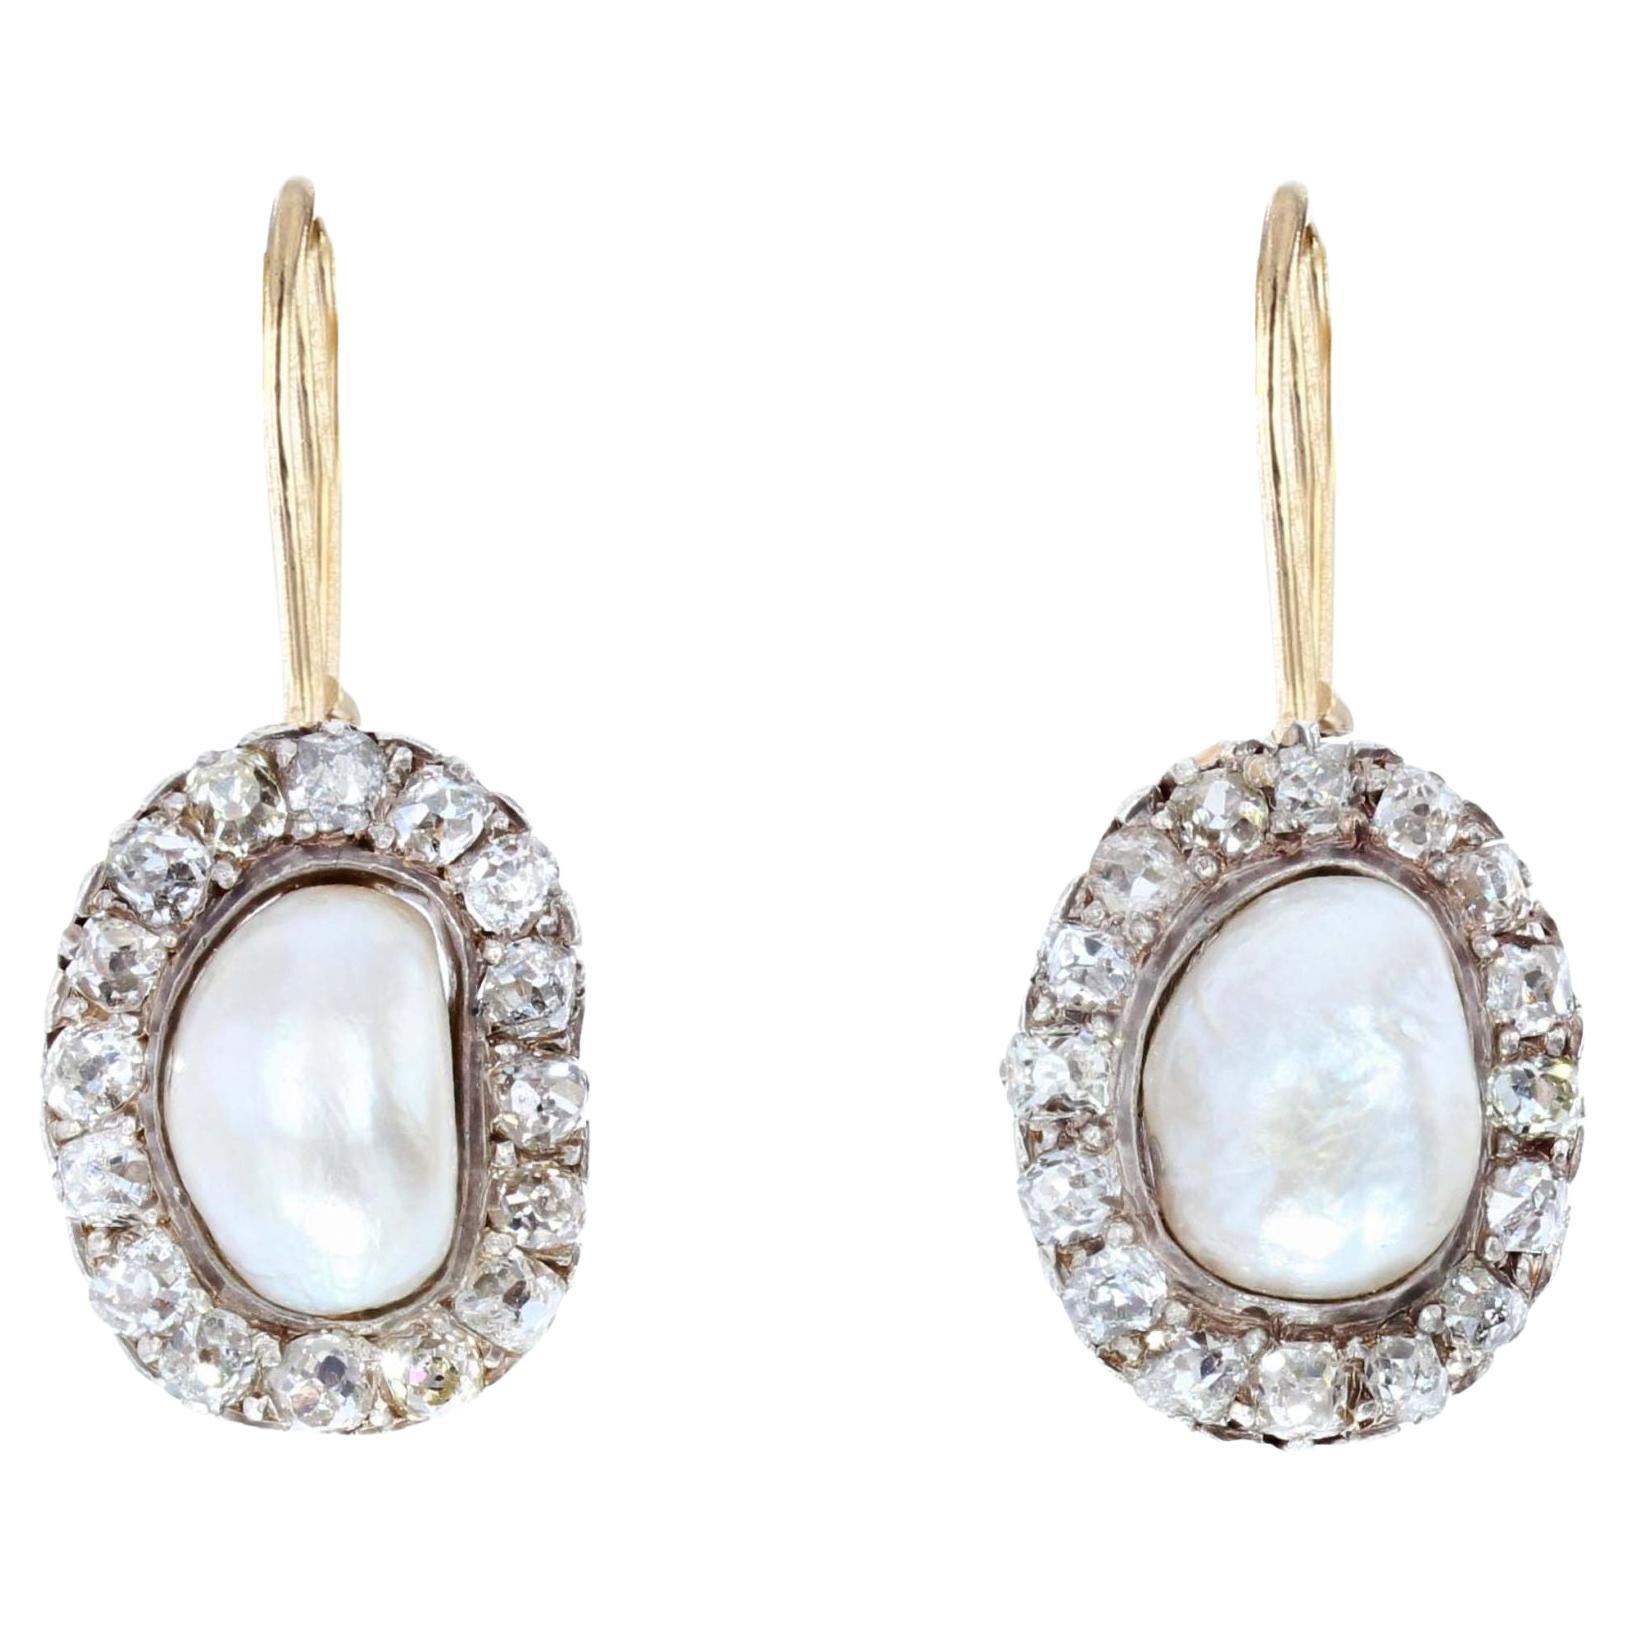 Boucles d'oreilles pendantes en or rose pour perles naturelles certifies du 19e sicle.